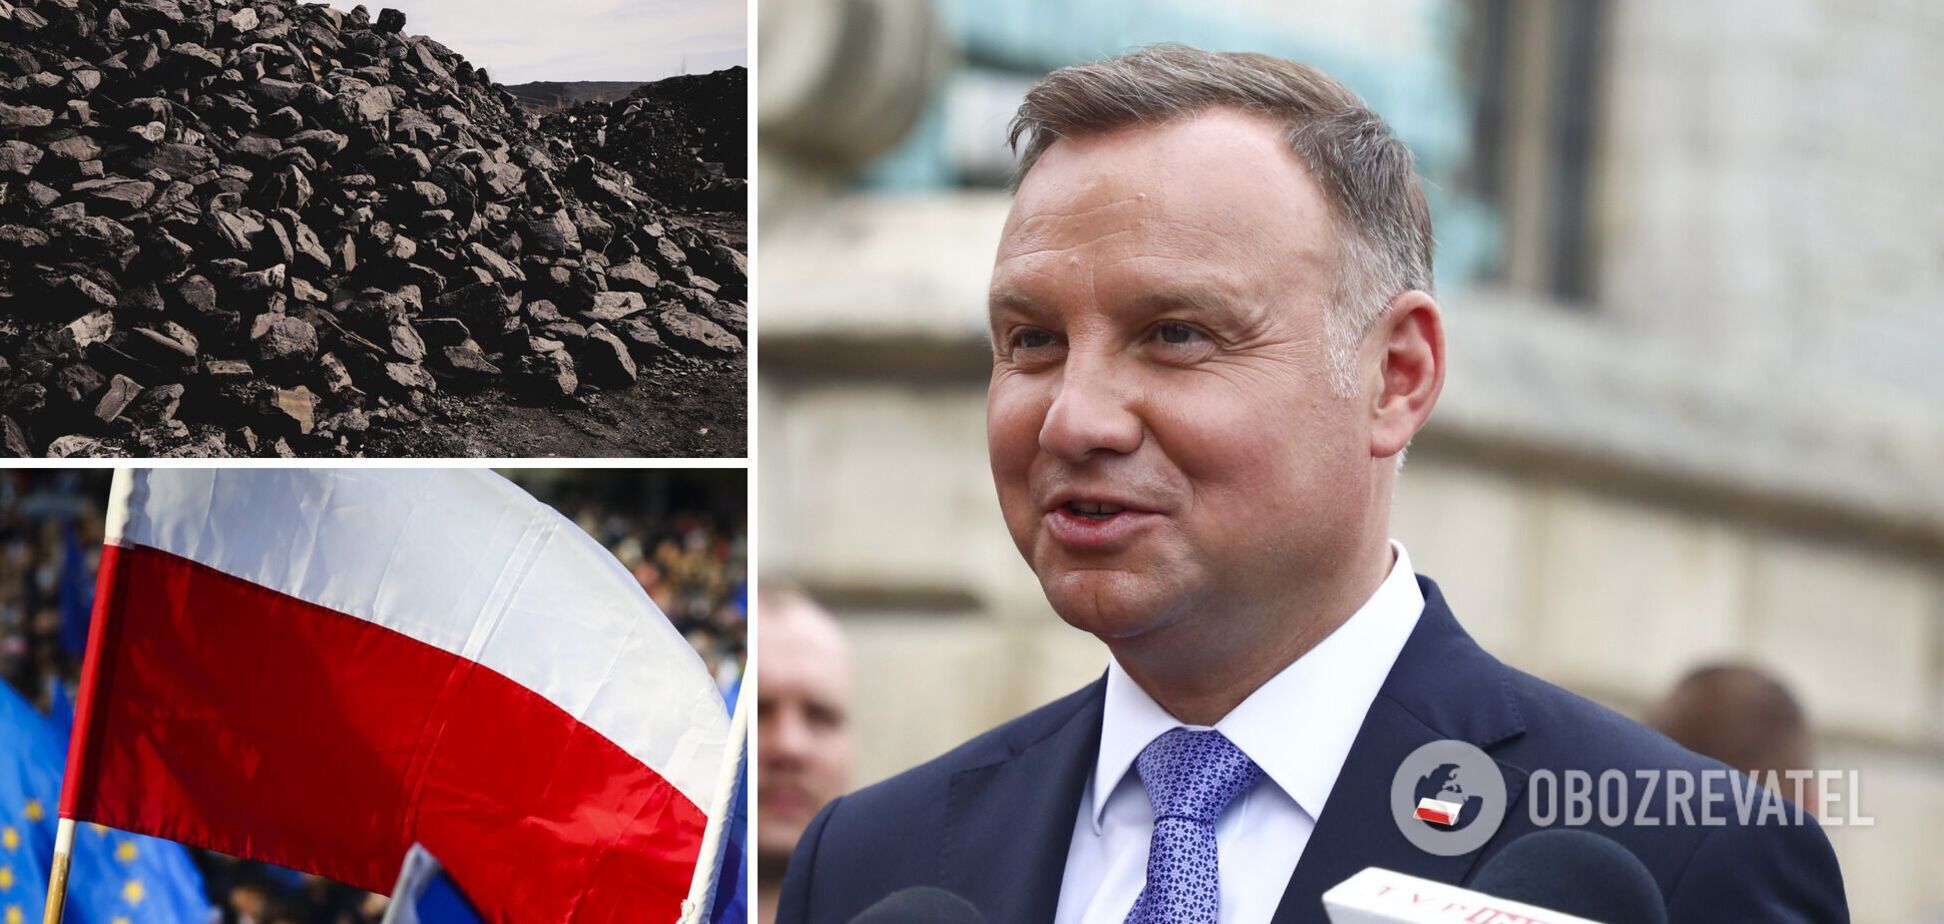 Польша отдельно запретила уголь из РФ в дополнение к общеевропейским санкциям